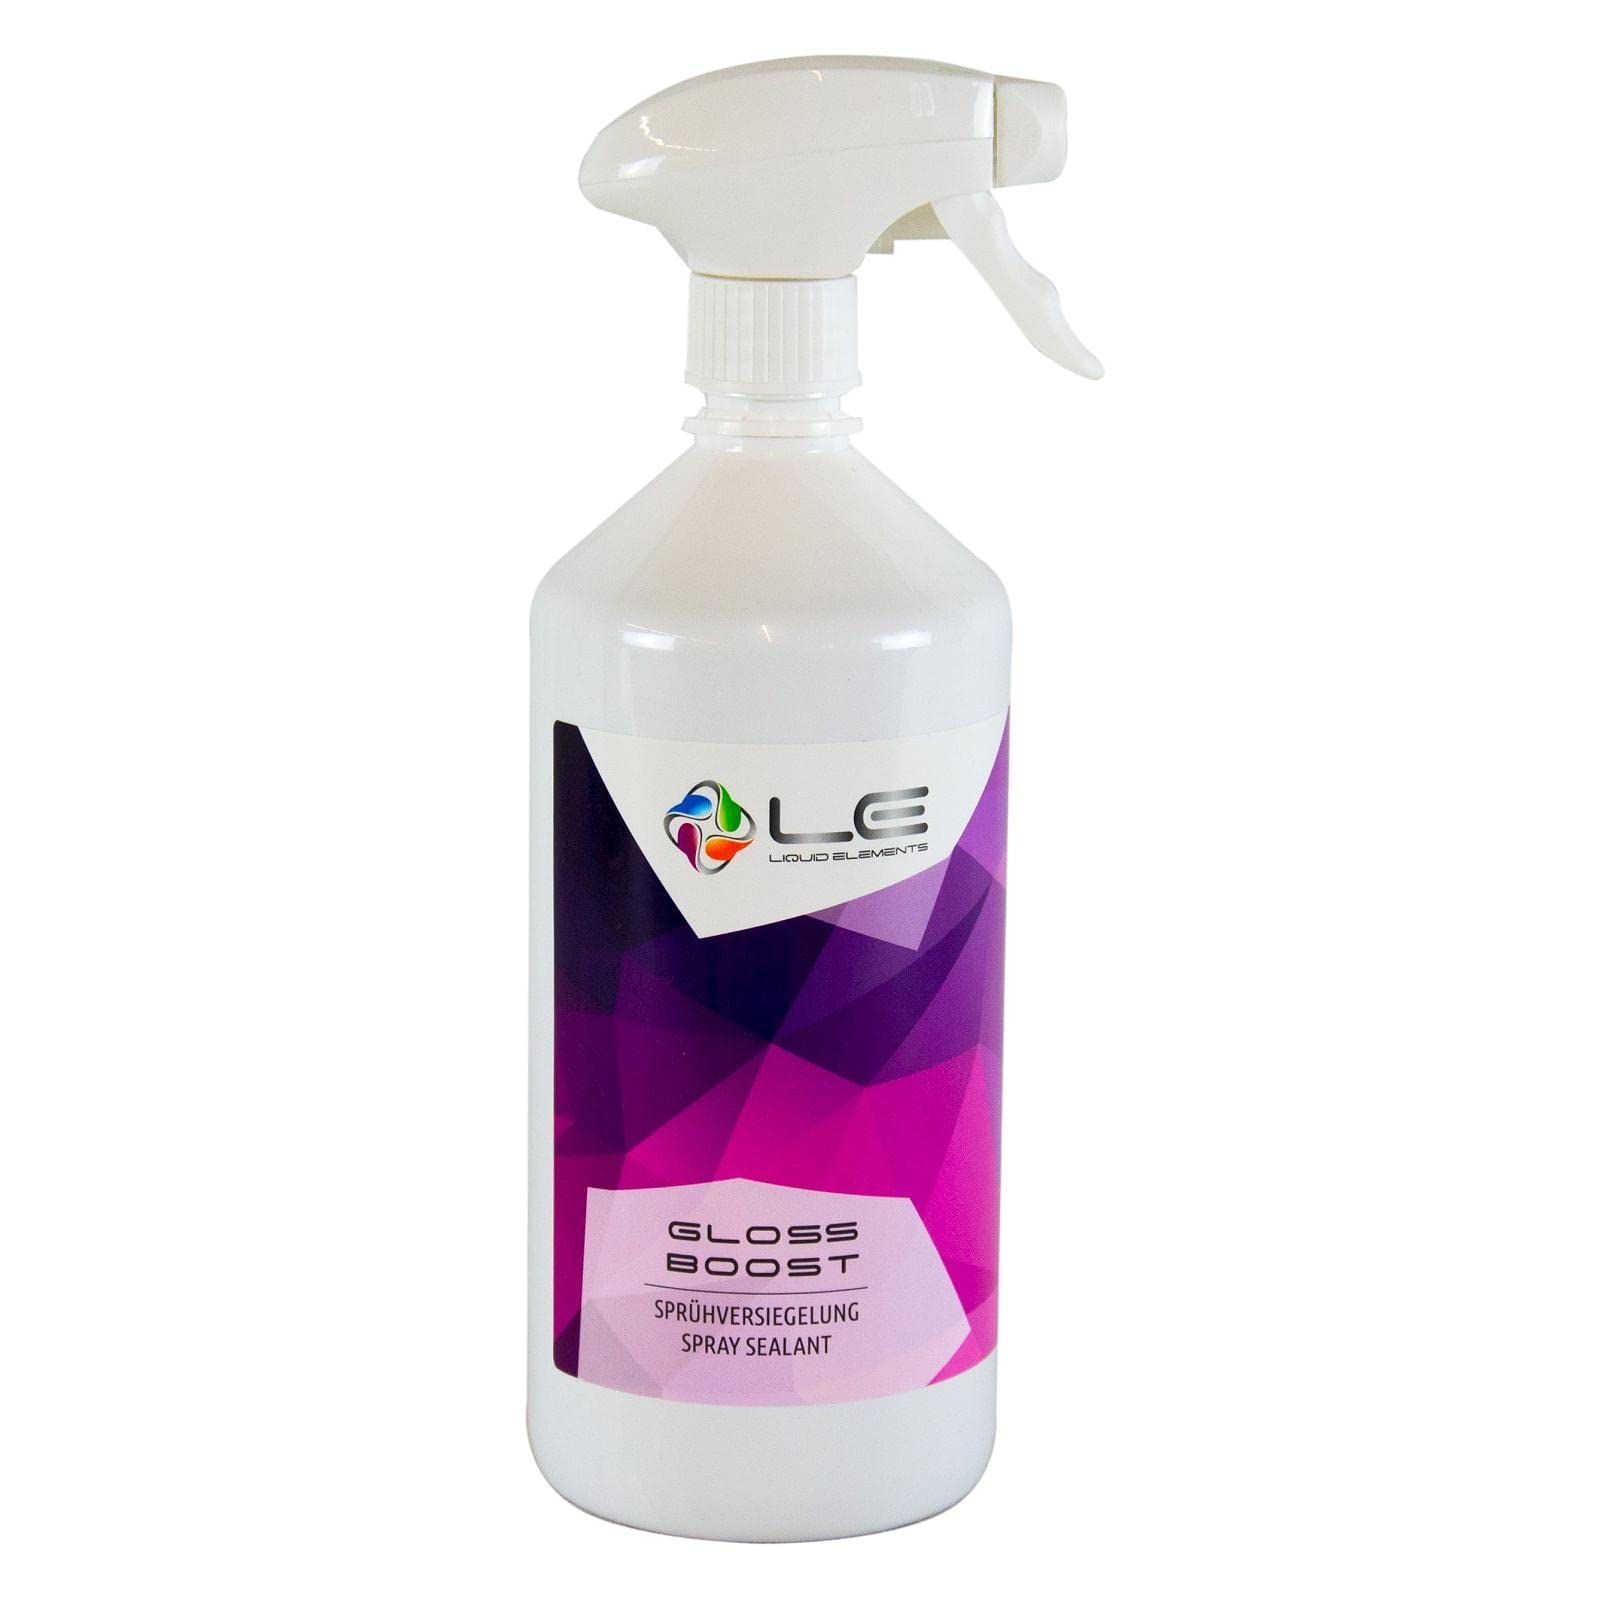 Liquid Elements – Gloss Boost Sprühversiegelung 500 ml – Auto Detailer Spray Lackversiegelung für Glanz, Glätte & Schutz – schnelle Lackpflege für alle Lacke geeignet von Liquid Elements